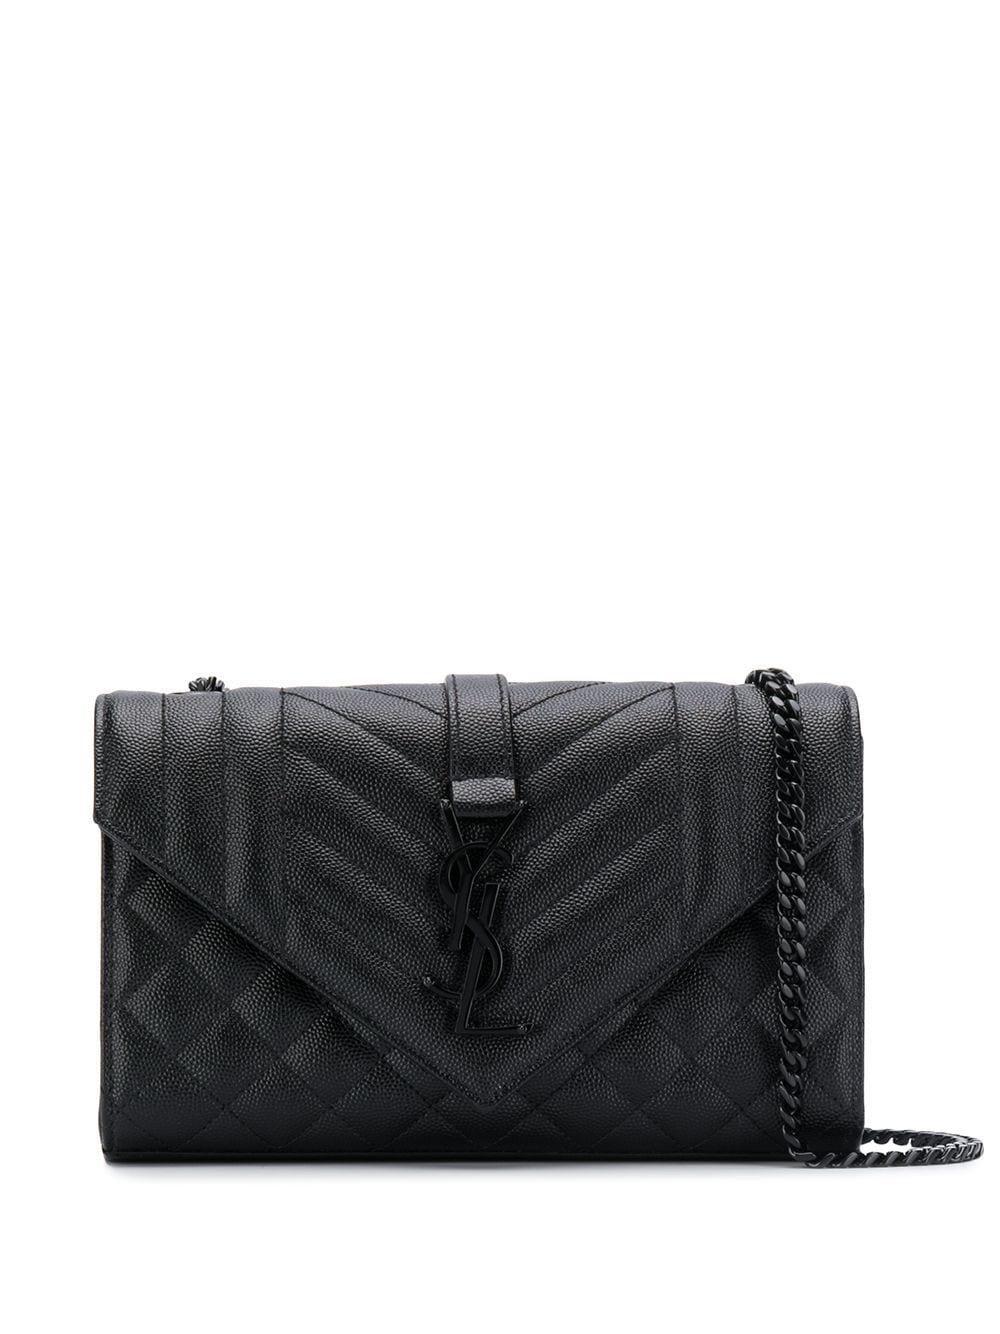 Black Envelope matelassé-leather shoulder bag, Saint Laurent